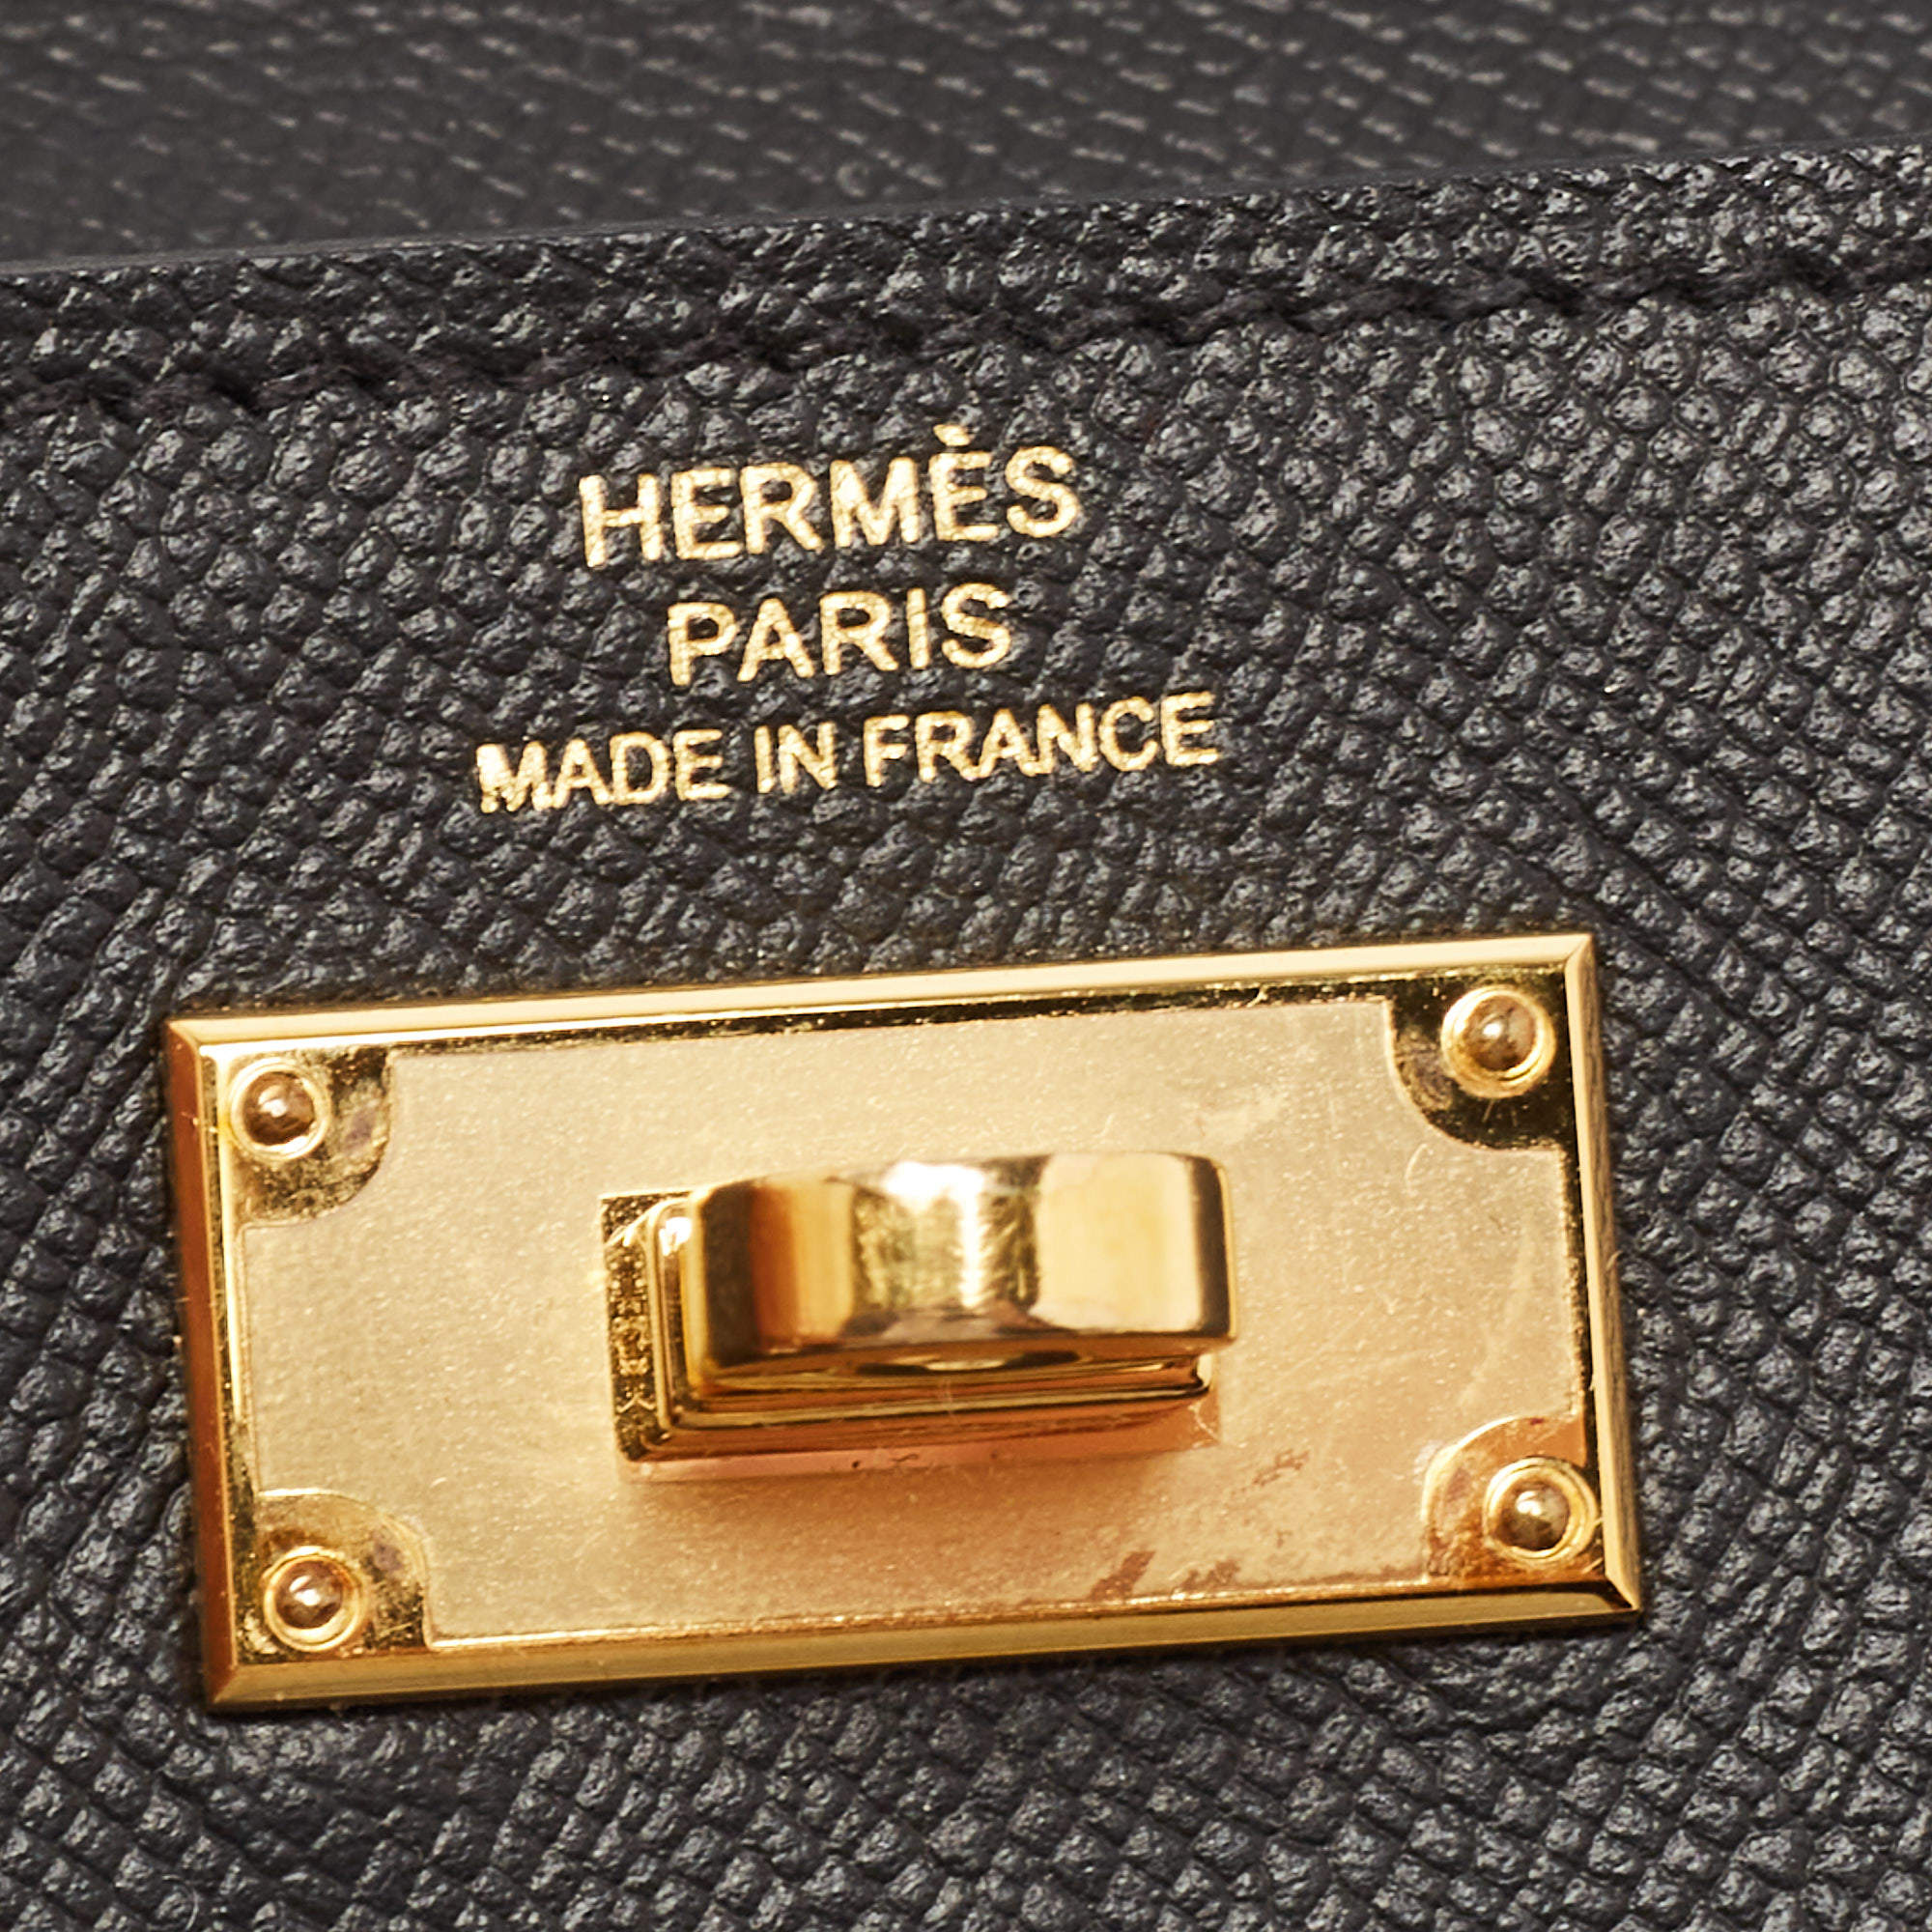 Hermes Blue Thalassa Epsom Leather Poker Compact Wallet Hermes